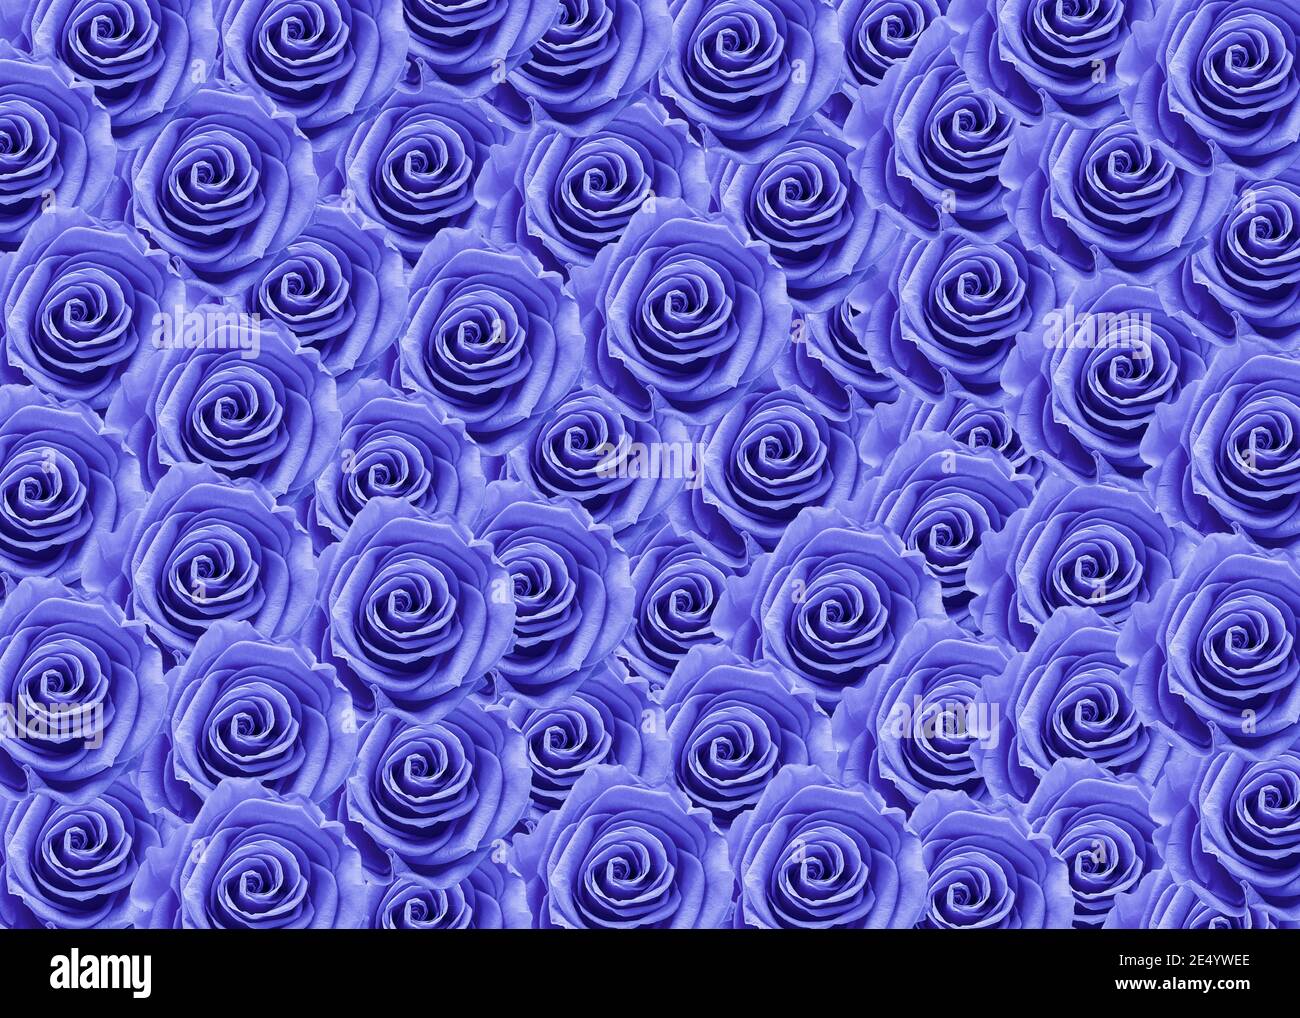 Magnifiques roses bleues pour le jour de l'amour, le jour de la Saint-Valentin. Banque D'Images